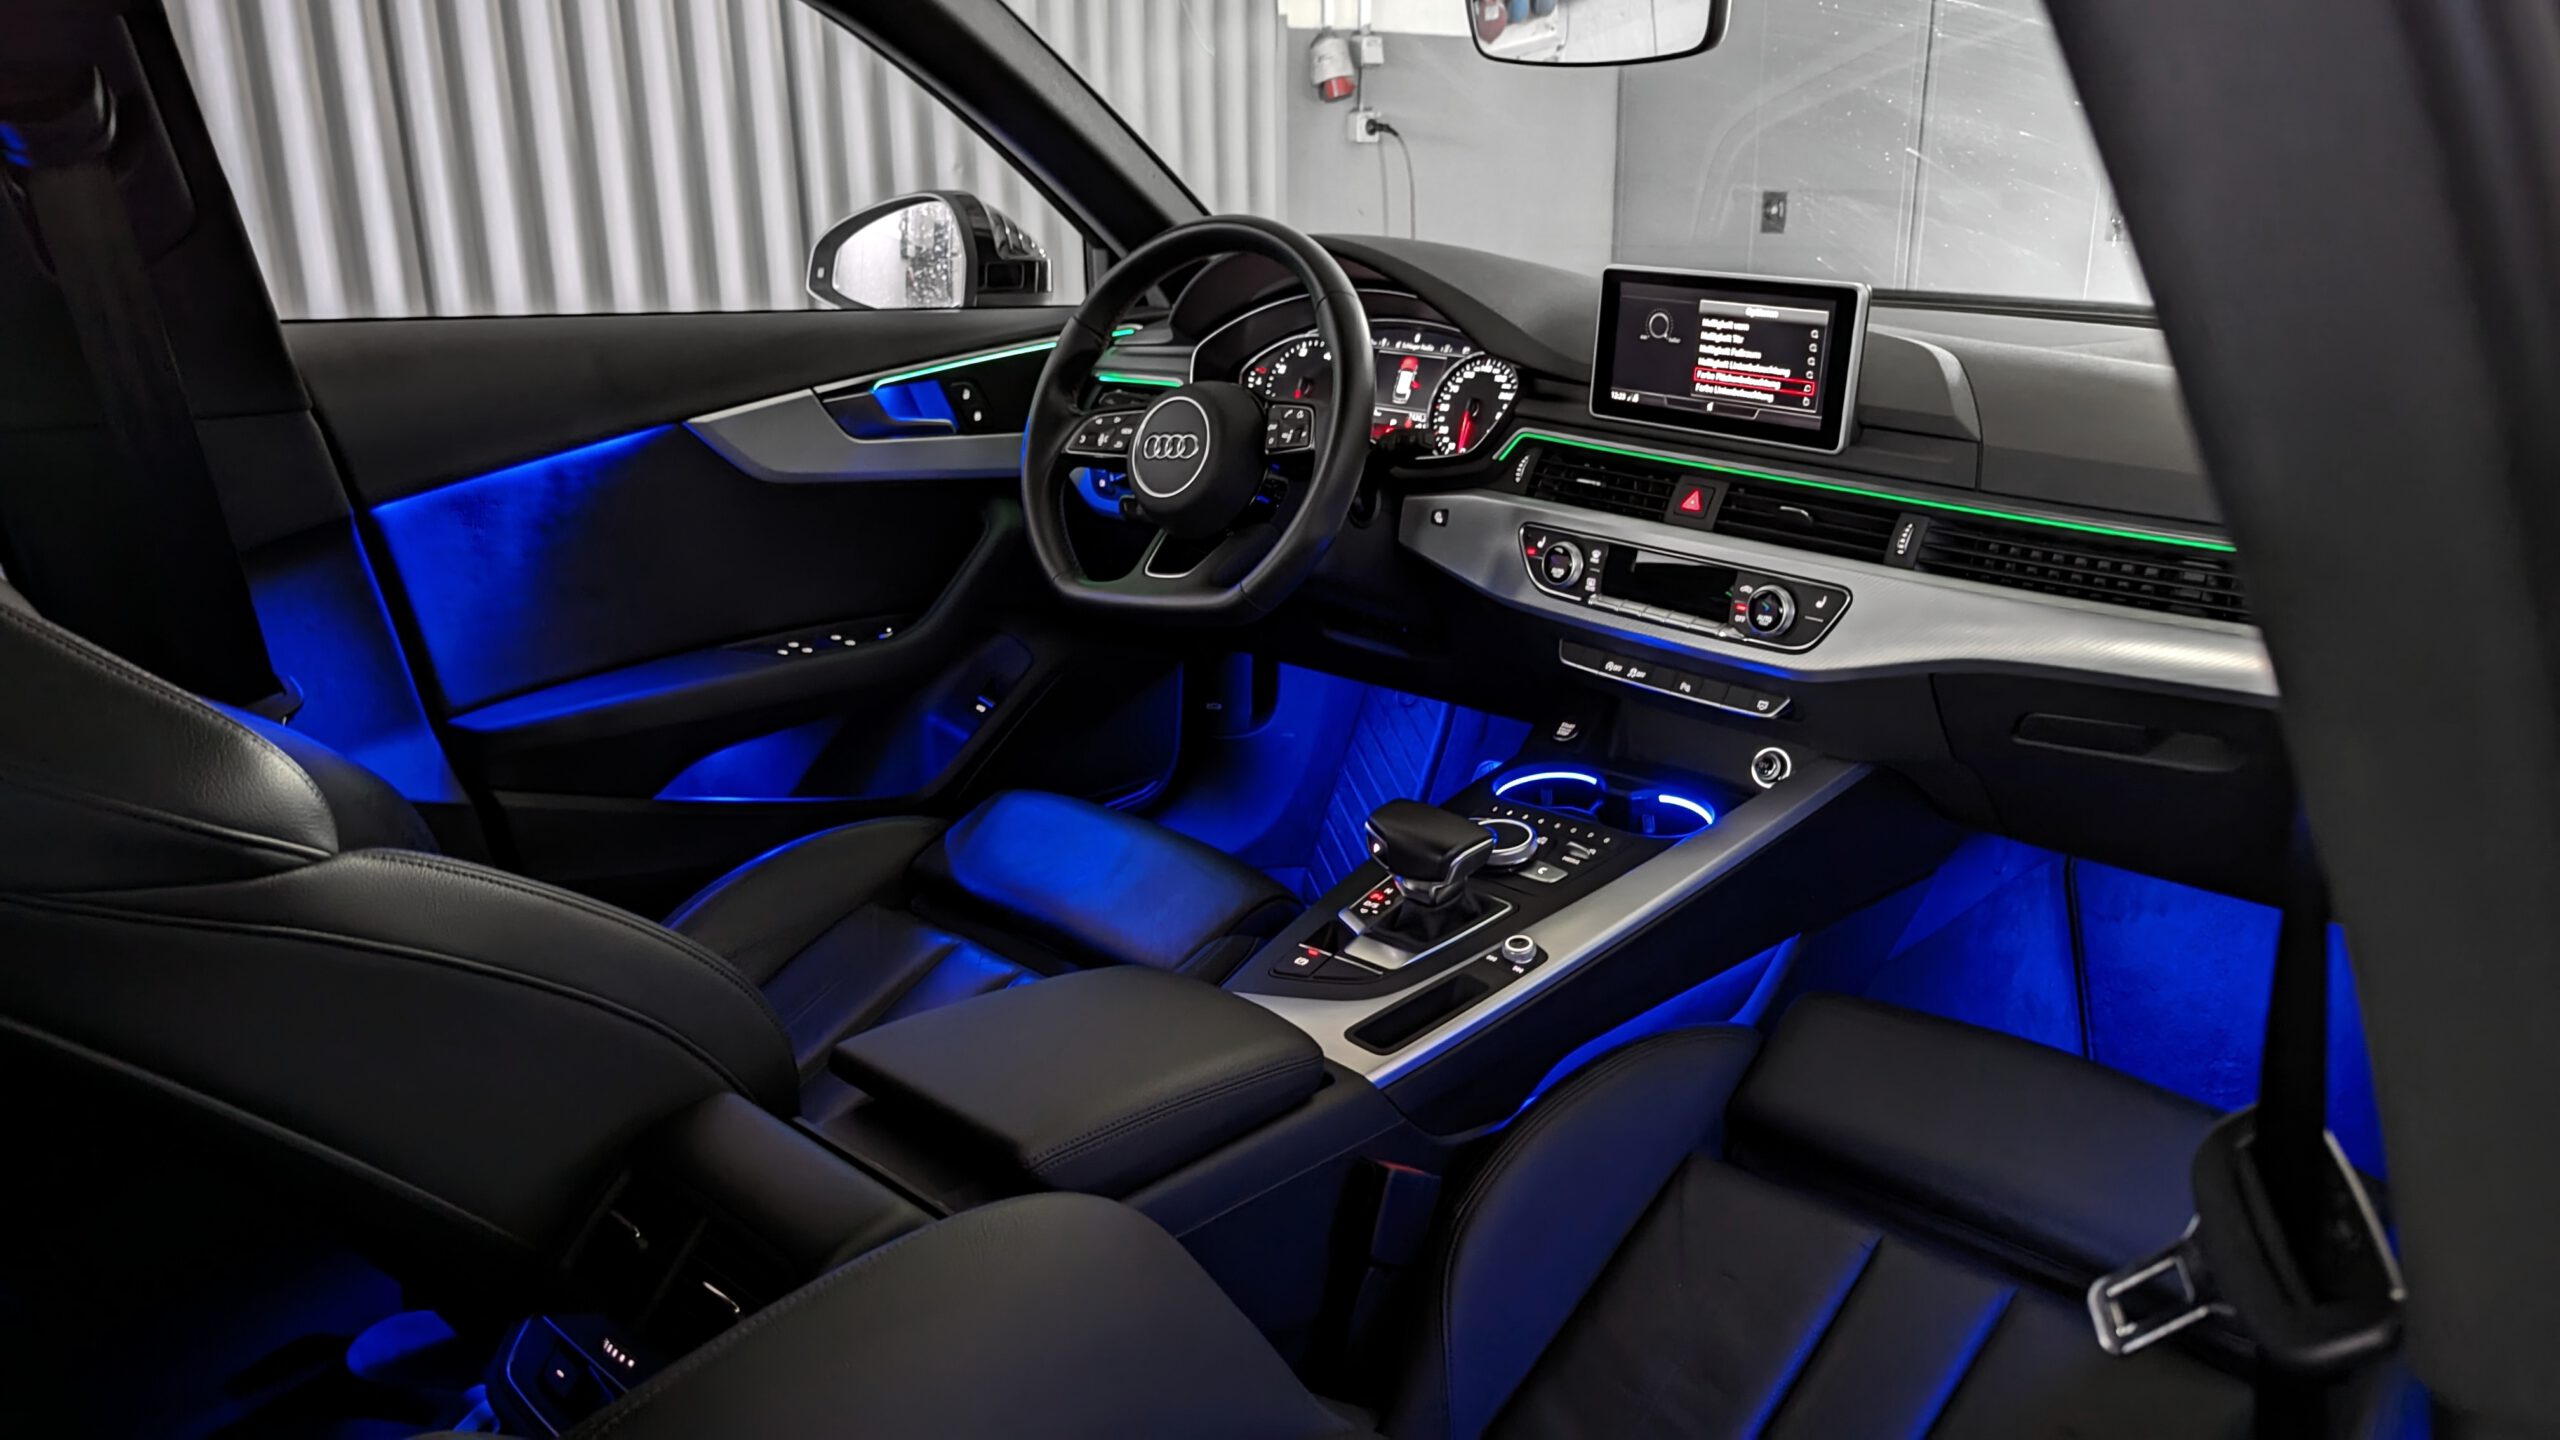 Audi A4 8W B9 Avant Sonnenschutzsystem 2-teilig Interieur